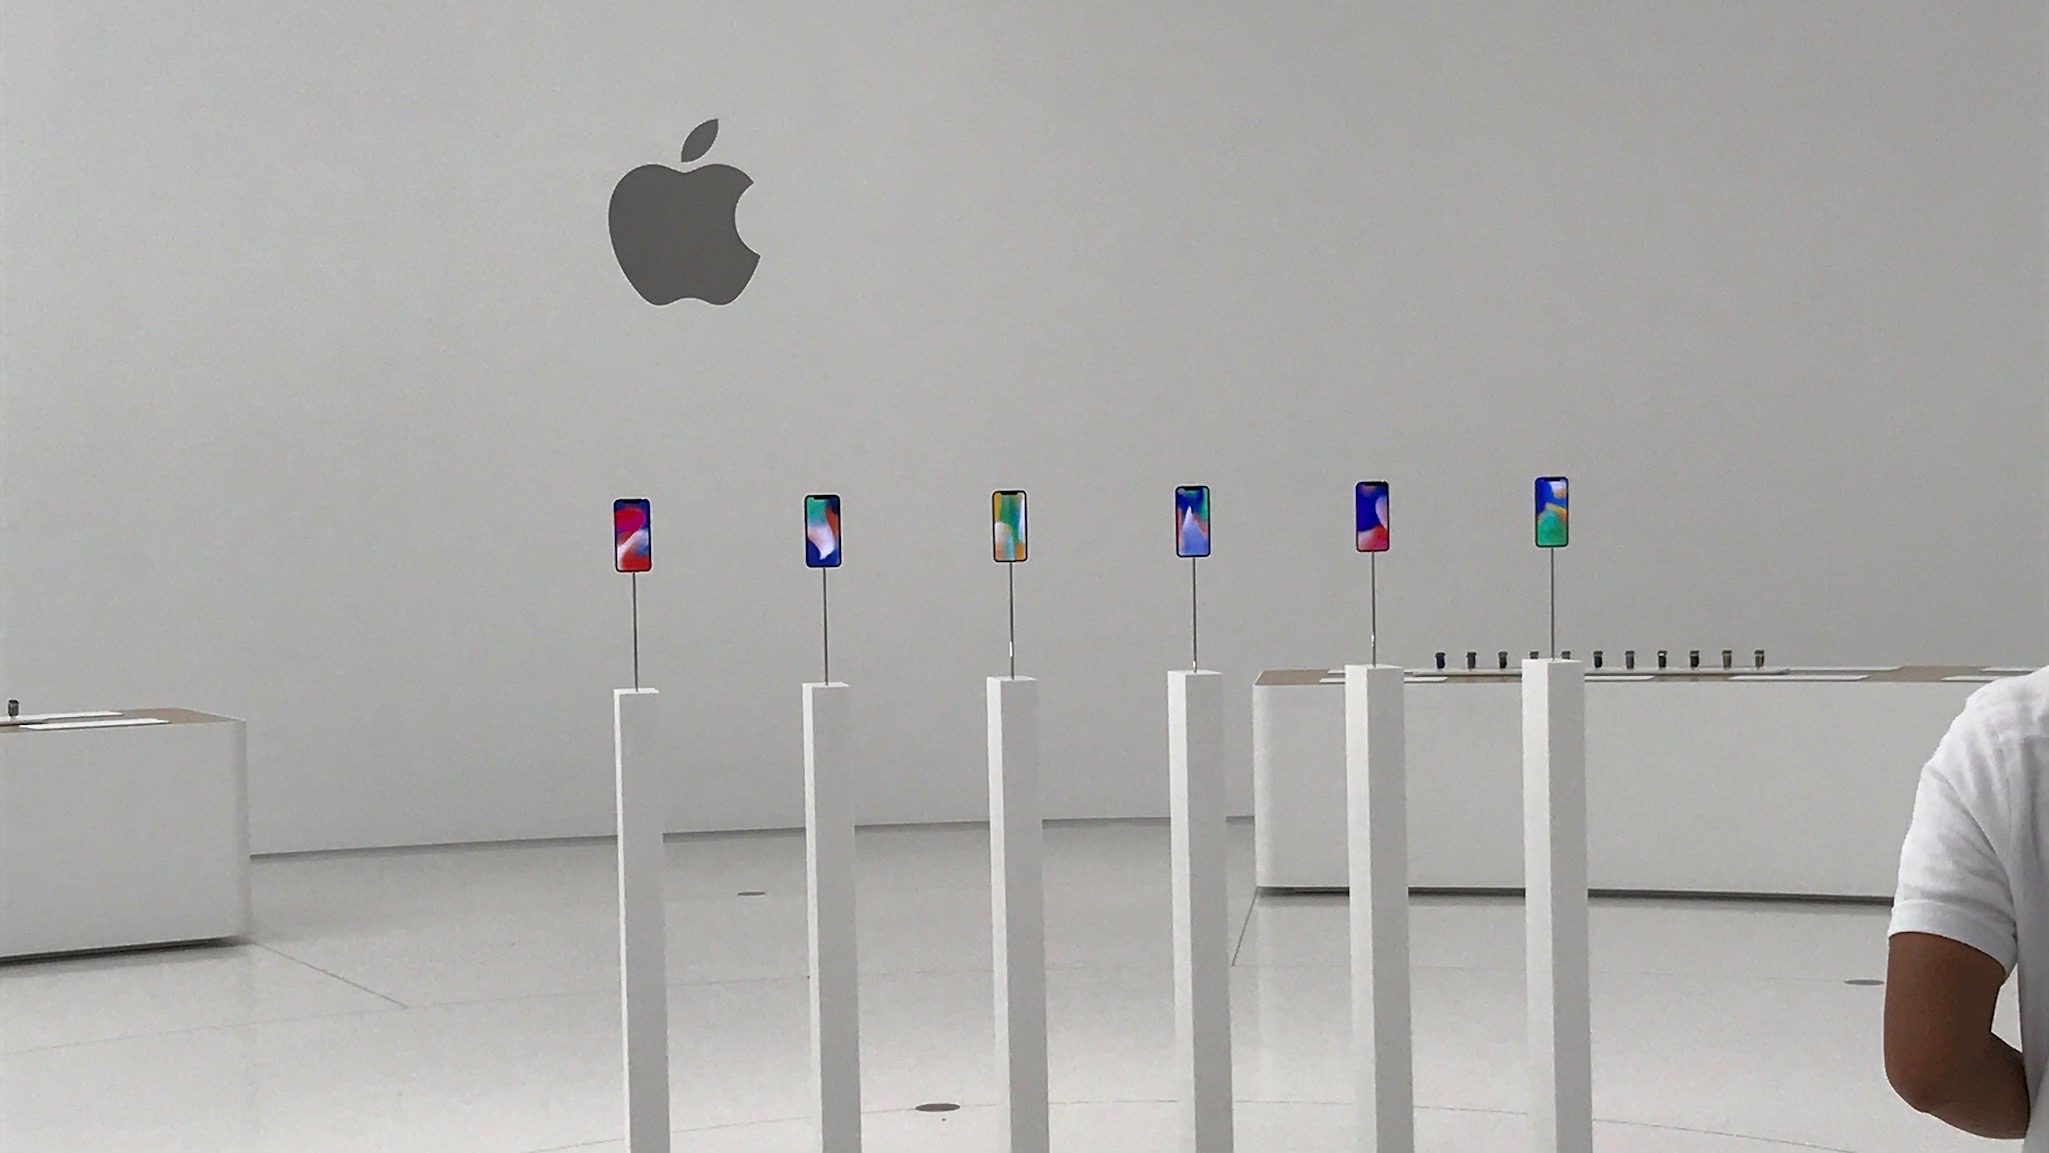 Sikerült megrendelnetek azt az iPhone X-et, amelyiket szerettétek volna? [Szavazás]